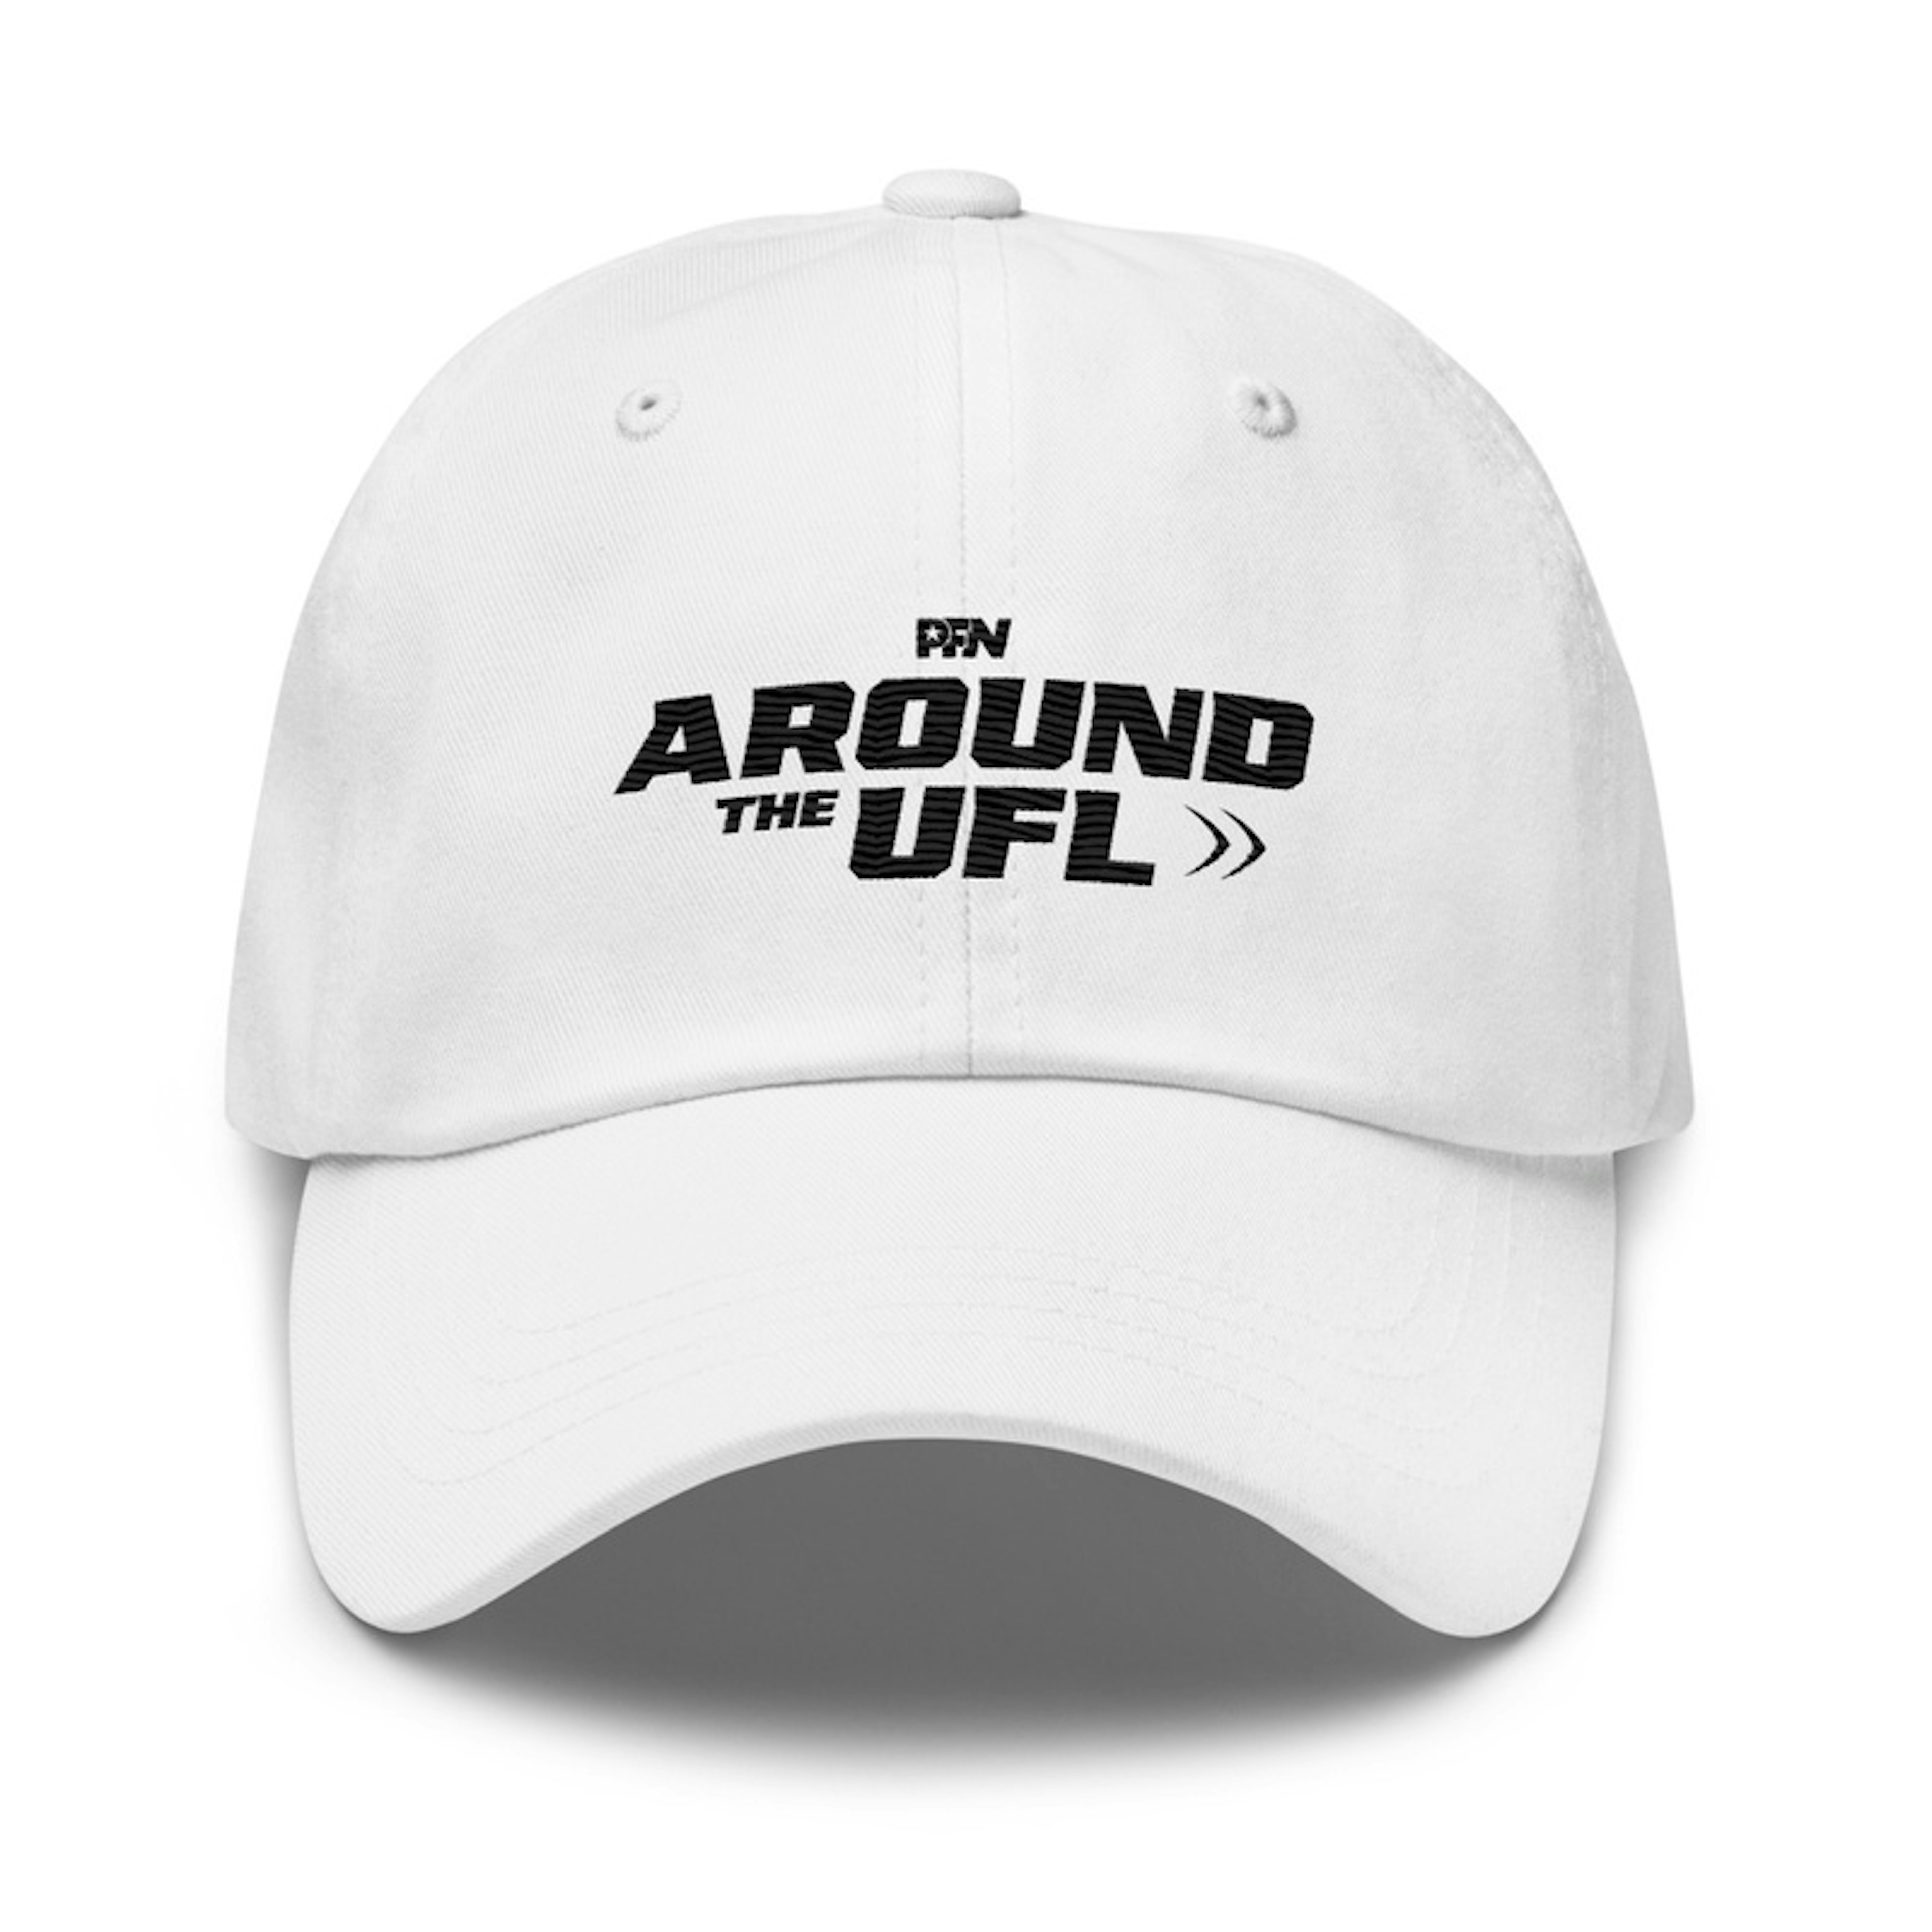 Around the UFL Dad Hat - White